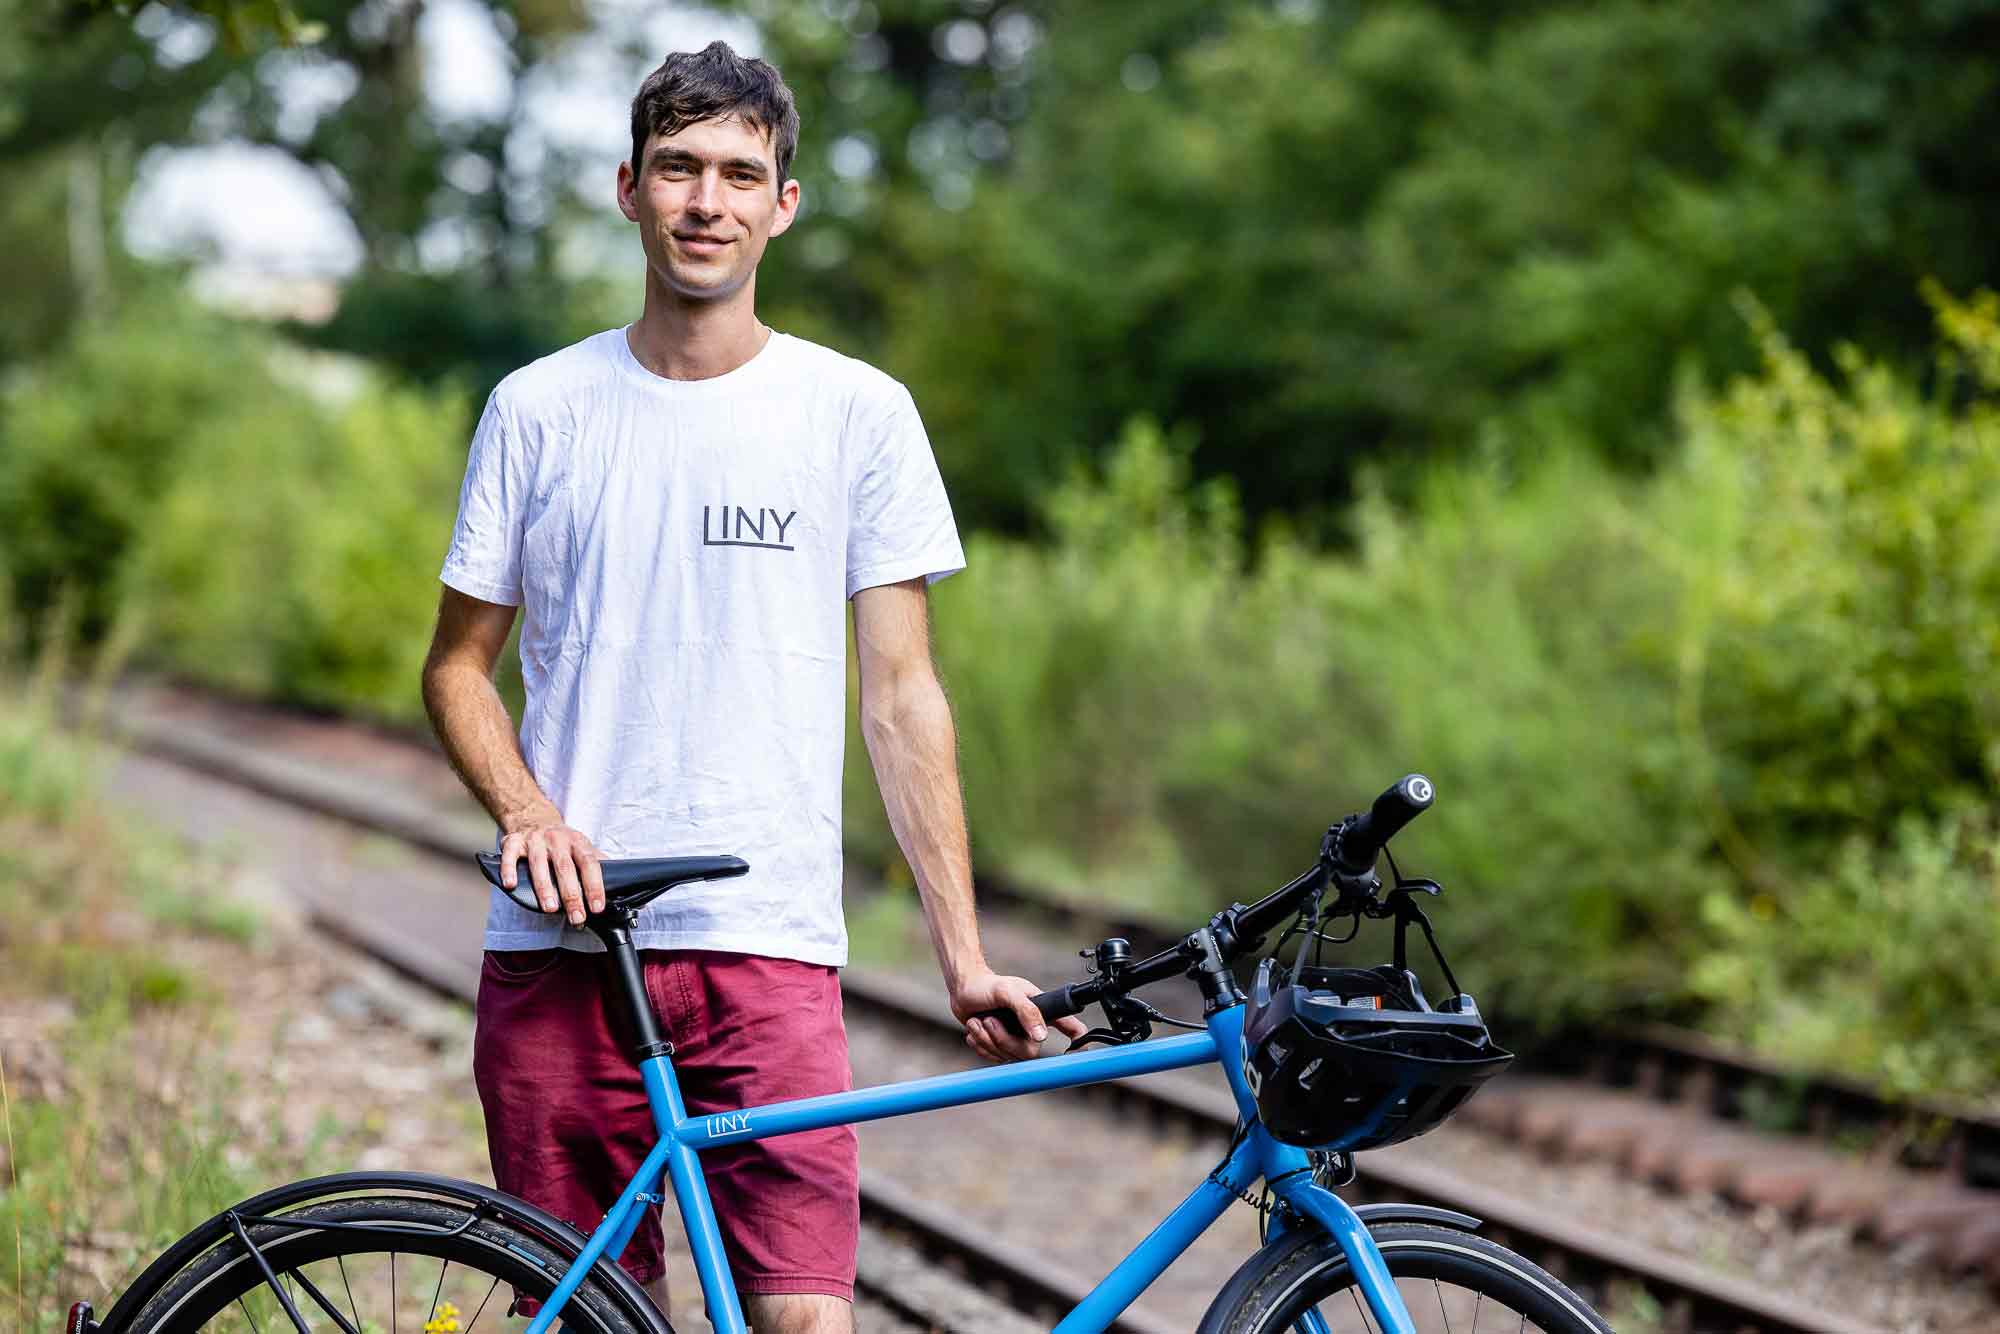 Liny: bikemarke nach dem prinzip der kreislaufwirtschaft